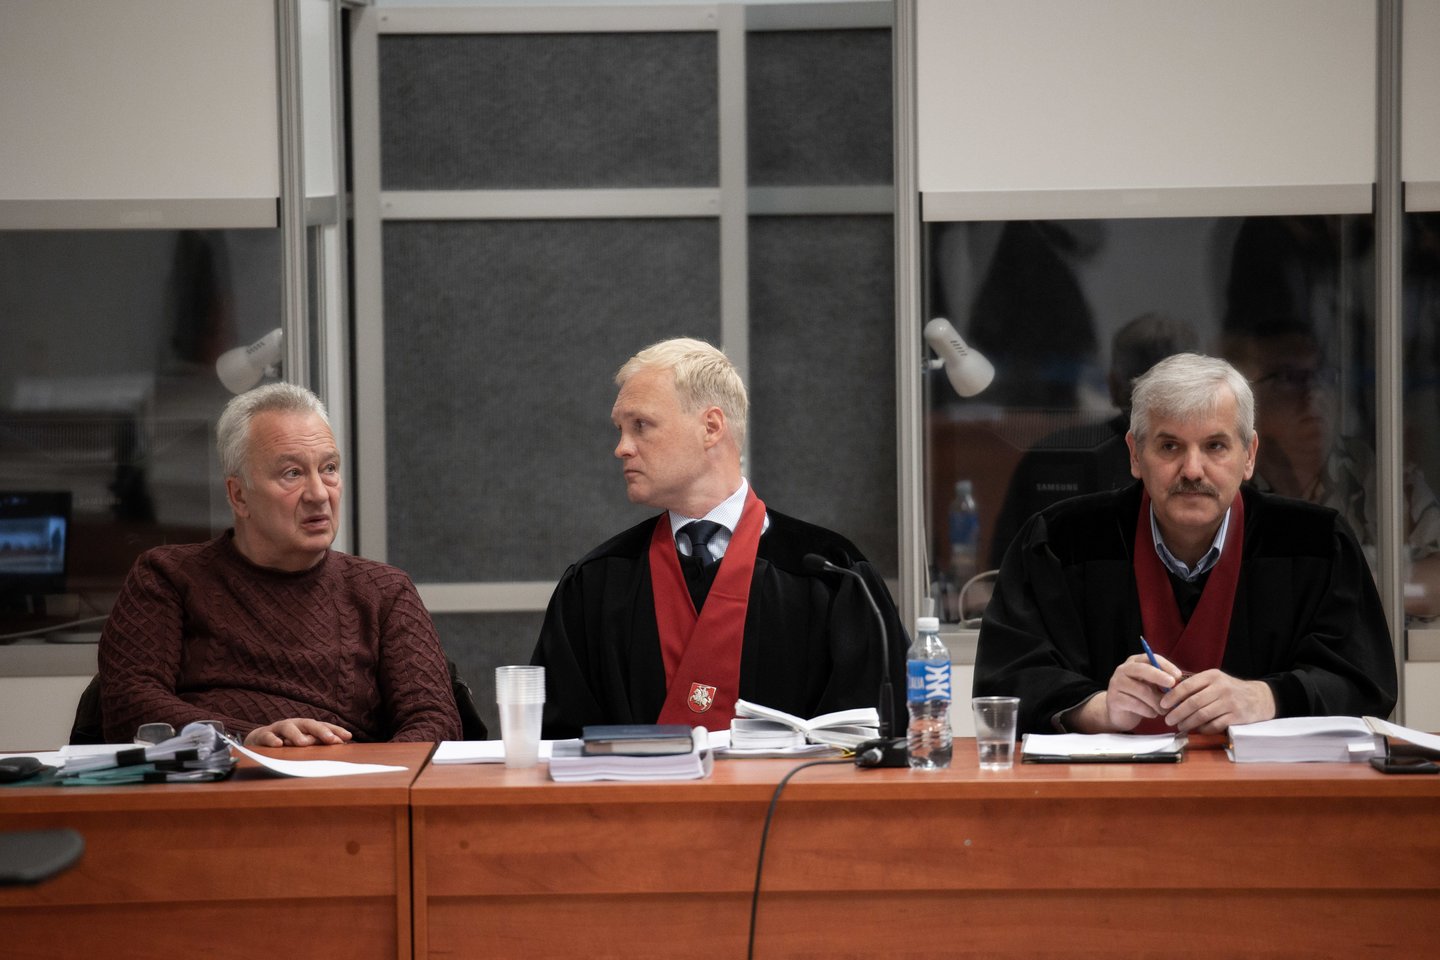 Trims kaltinamiesiems riaušių prie Seimo byloje už neatvykimą į teismo posėdį skirtos baudos.